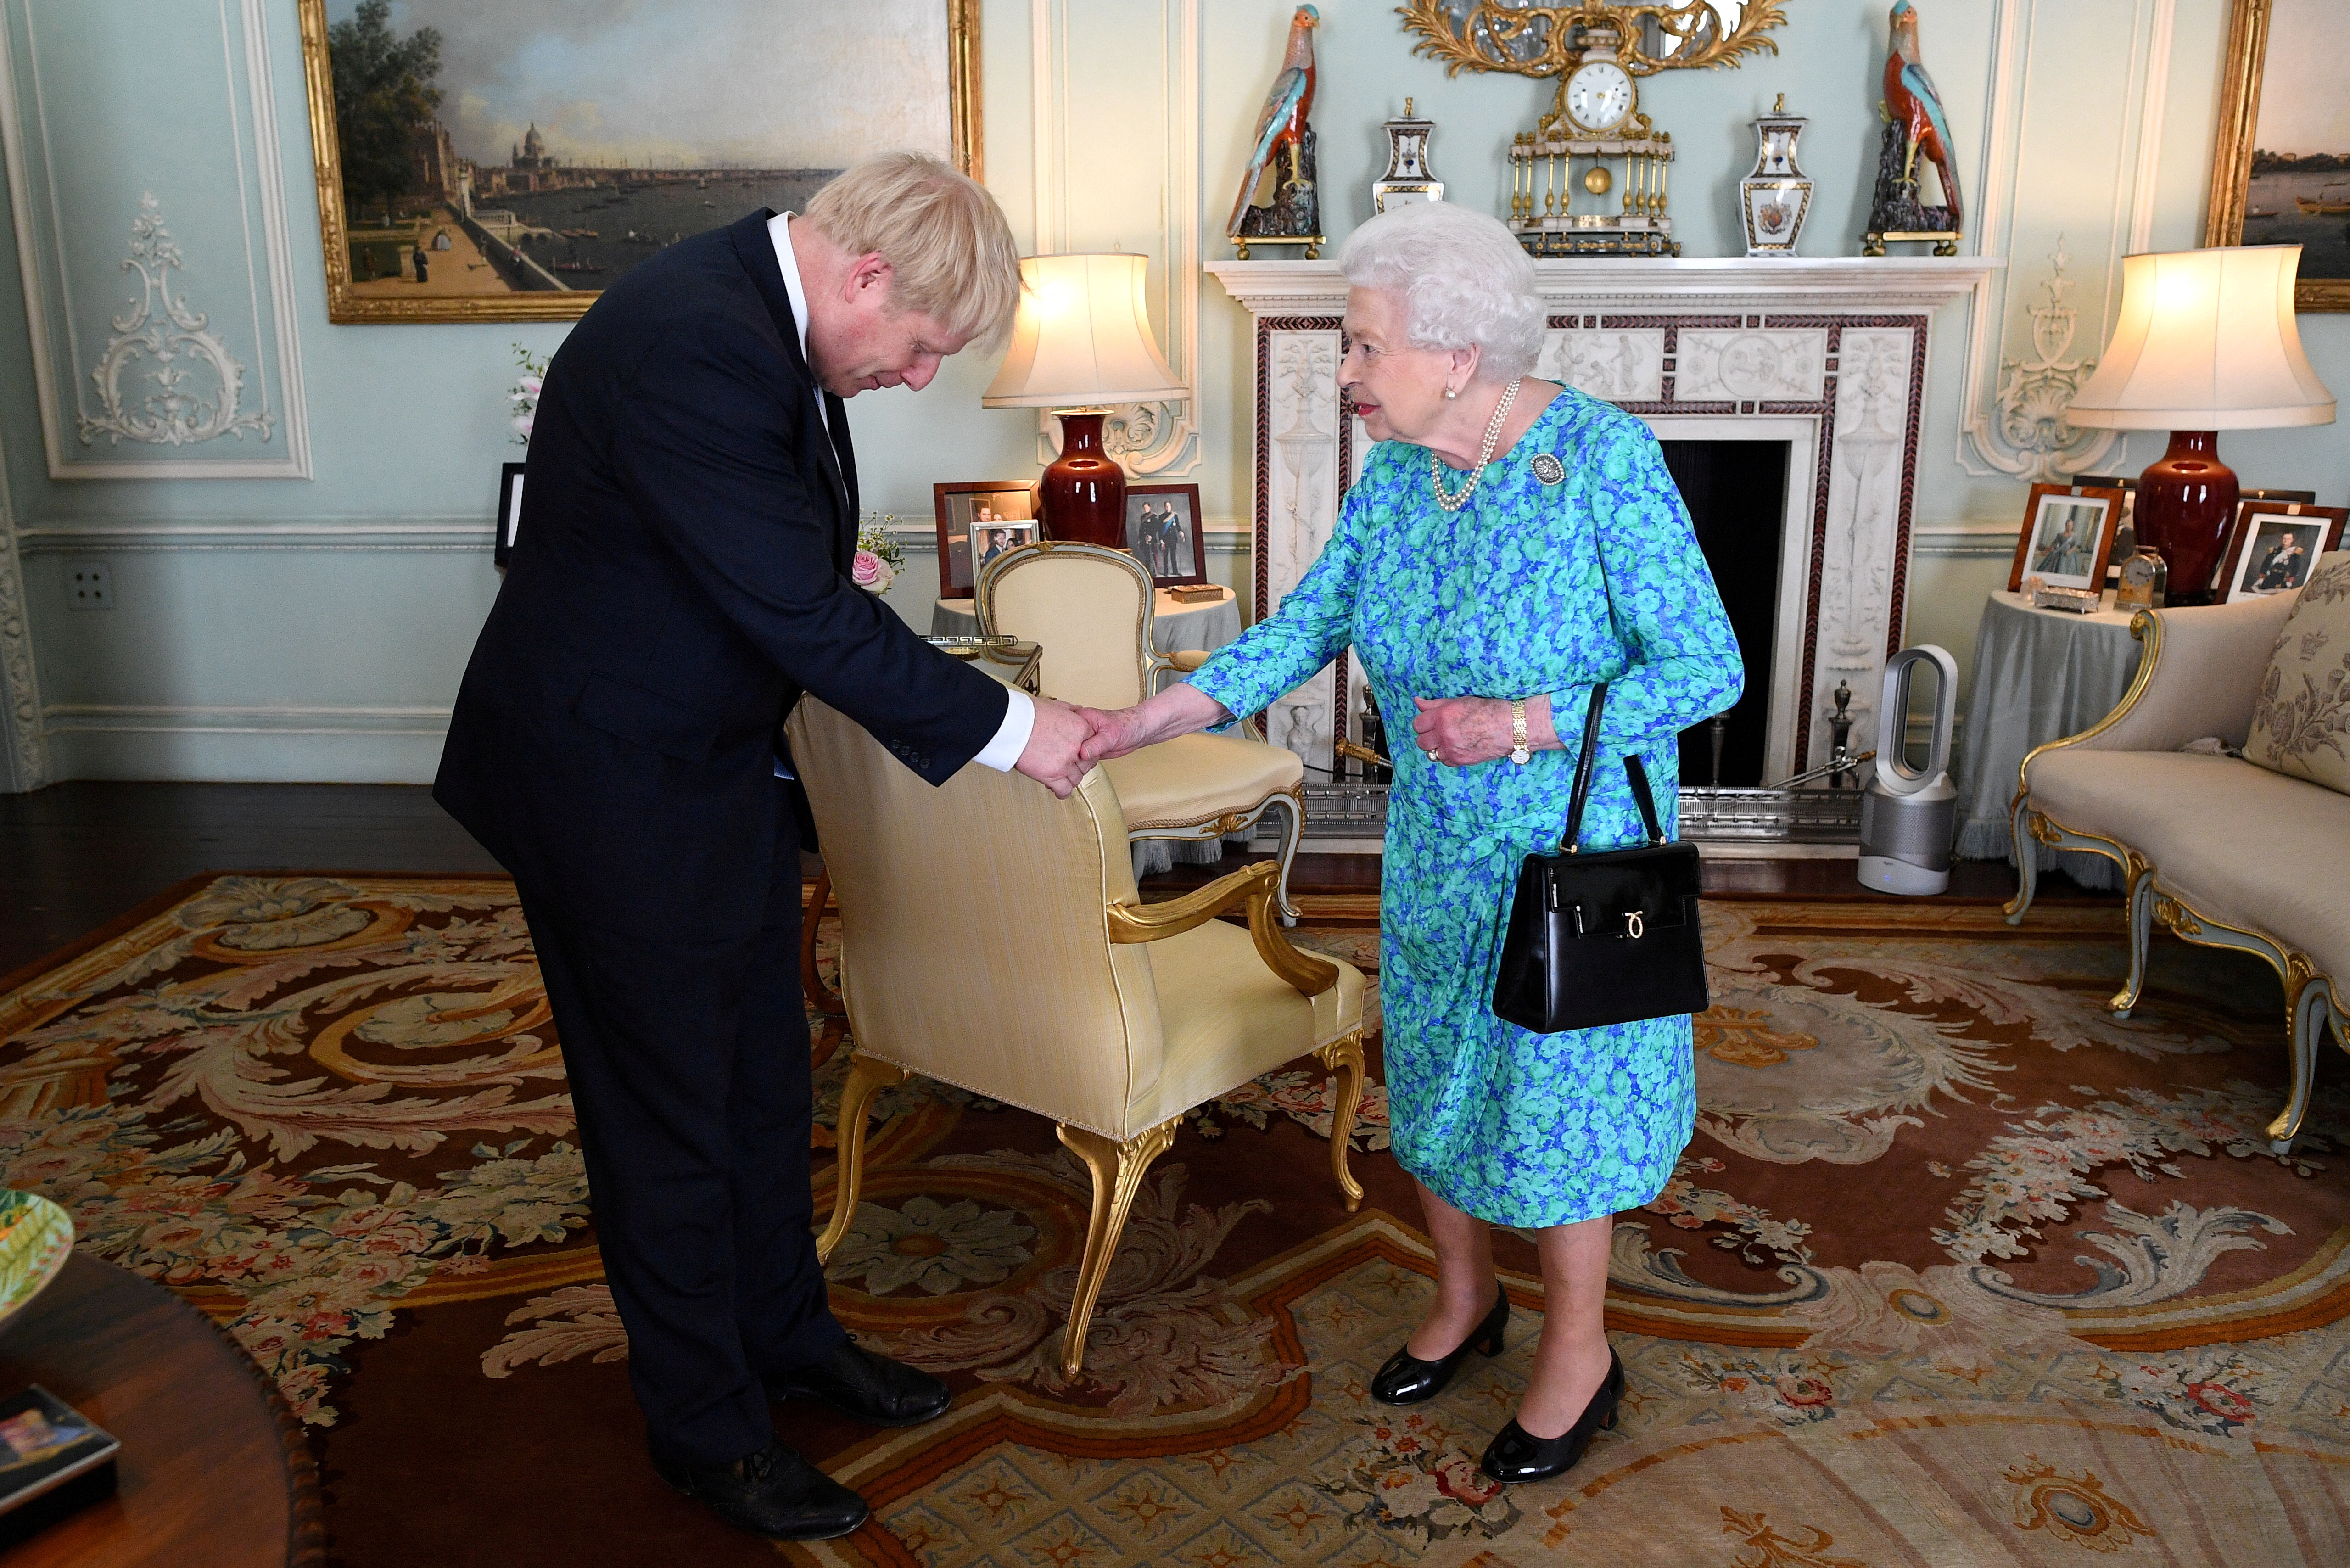 FOTO DE ARCHIVO: La reina Isabel II da la bienvenida a Boris Johnson durante una audiencia en el Palacio de Buckingham, donde lo reconoció oficialmente como el nuevo Primer Ministro, en Londres, Reino Unido, el 24 de julio de 2019 (Victoria Jones/Pool via REUTERS/File Photo)